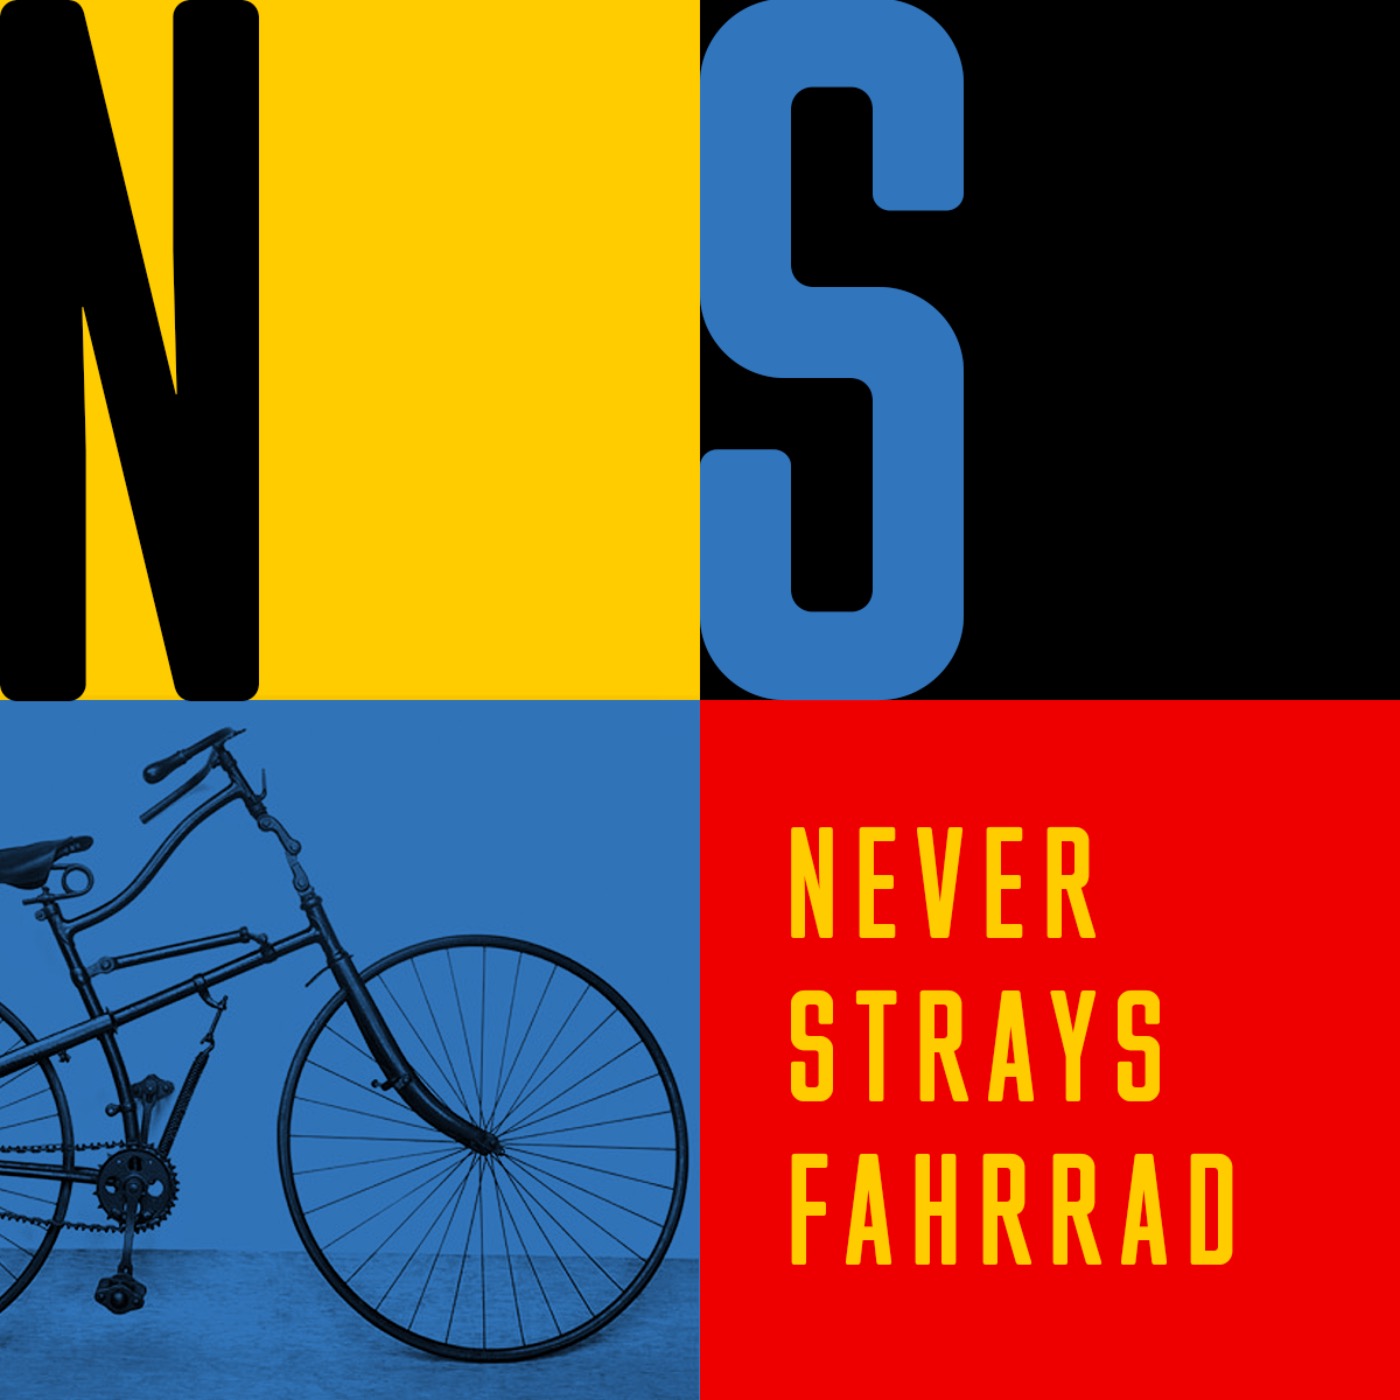 NEVER STRAYS FAHRRAD: GERMANY AWAITS